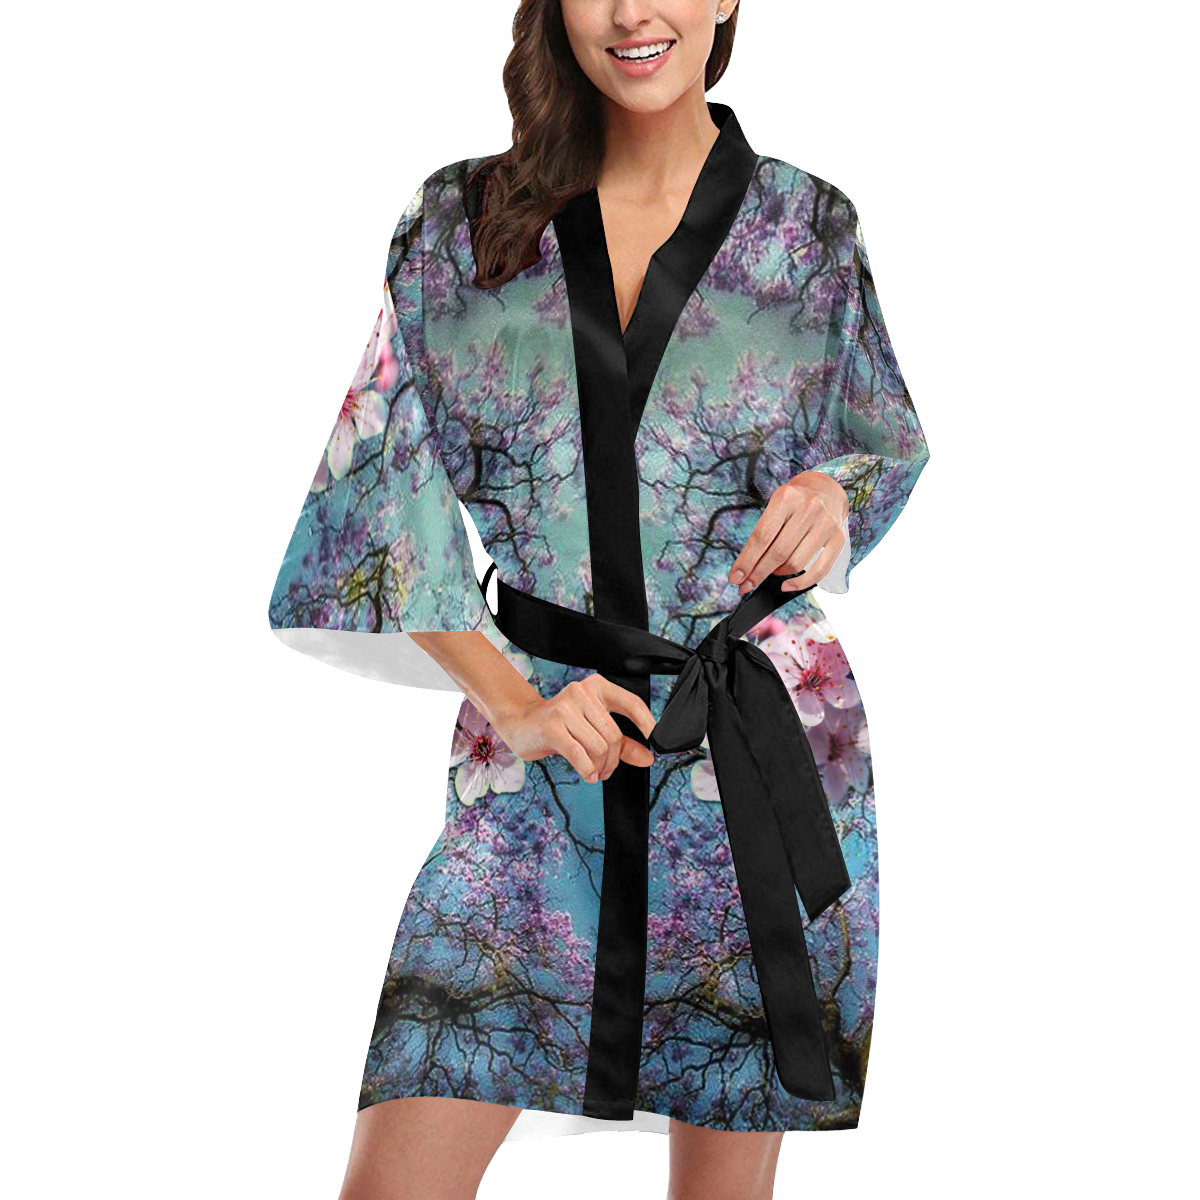 Cherry blossomL Kimono Robe